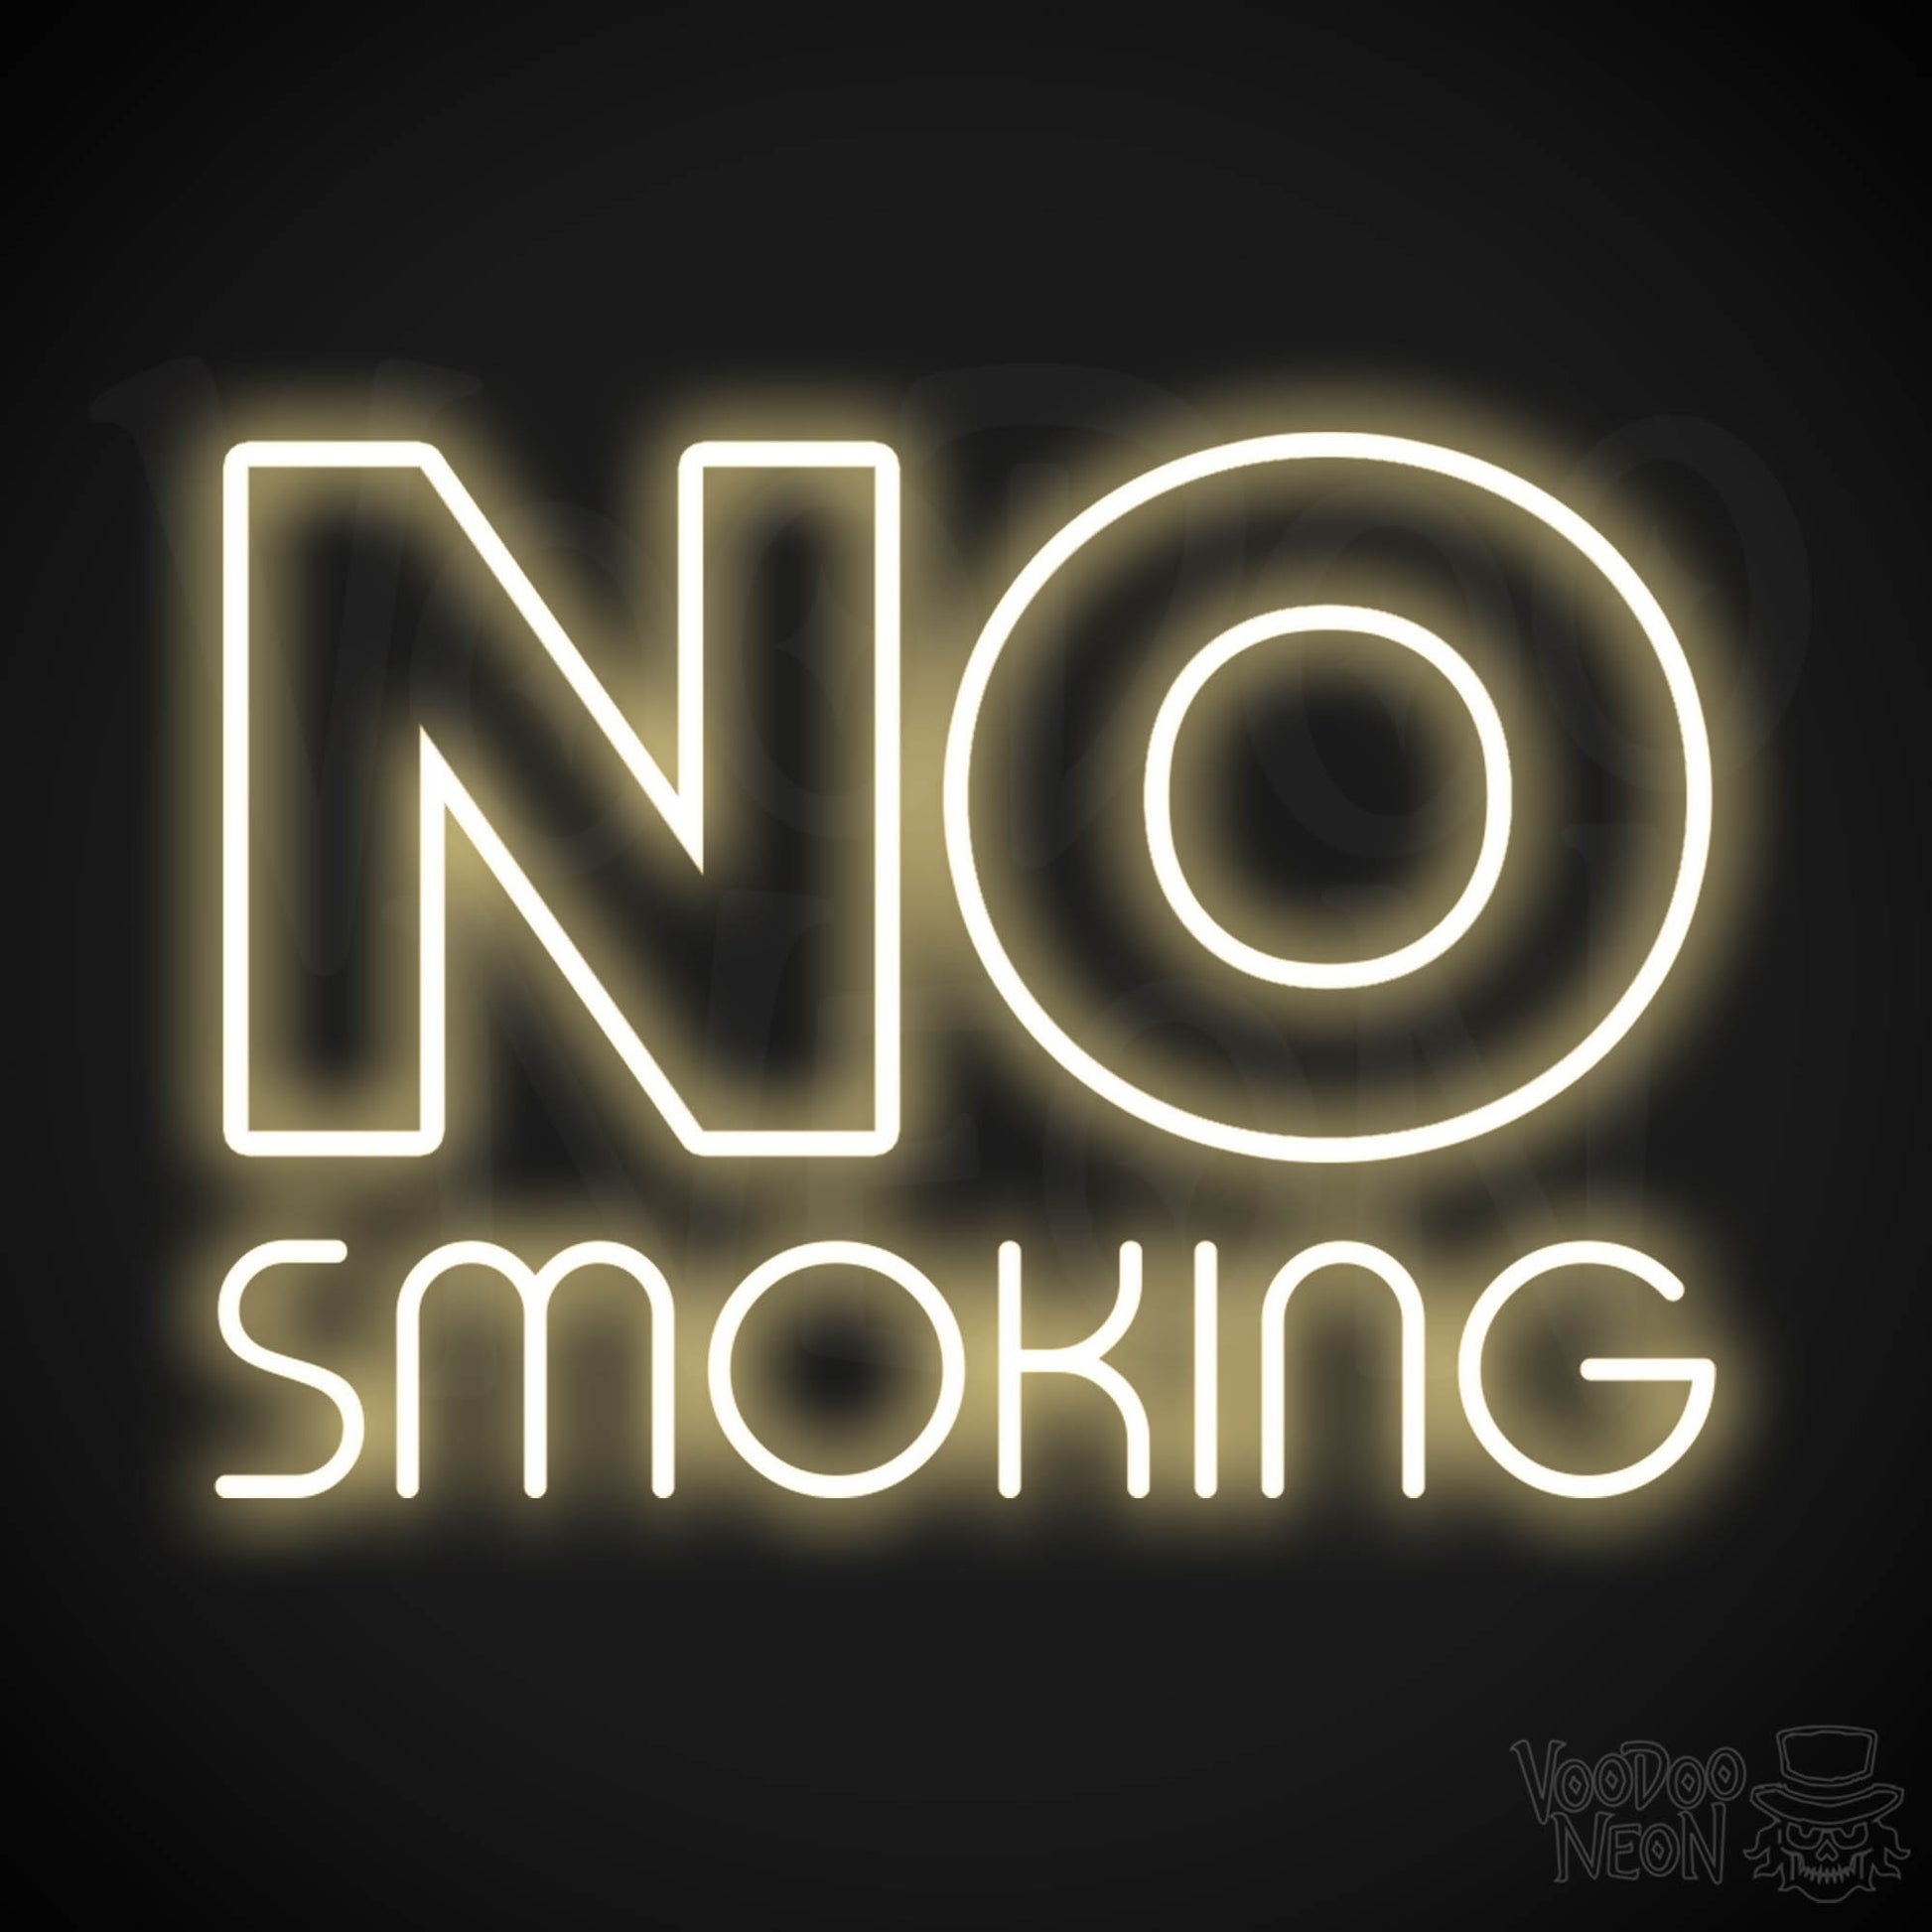 No Smoking LED Neon - Warm White